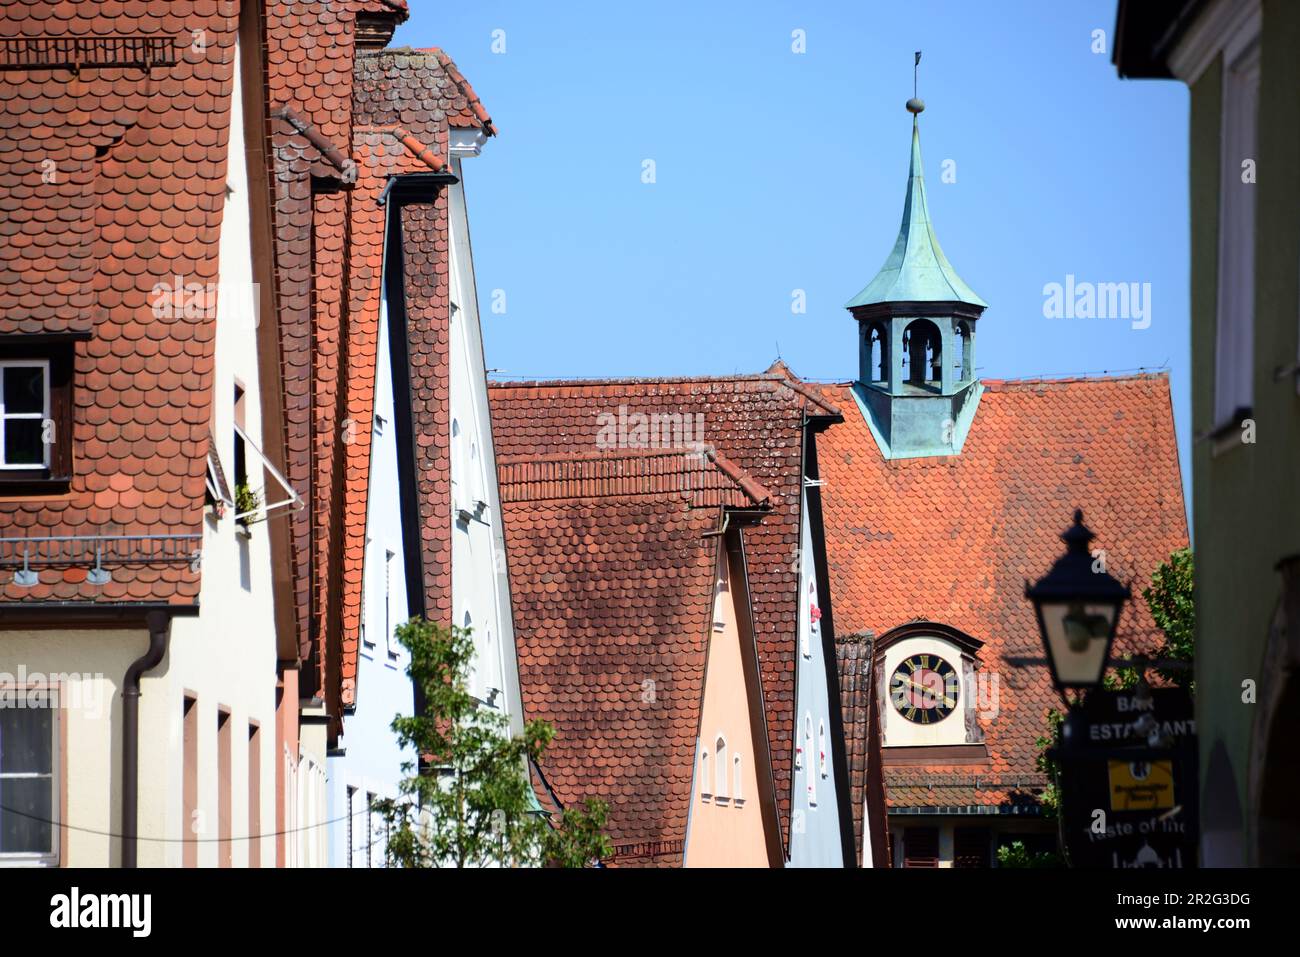 A Hersbruck, Fachwerk, alte Häuser, Gasse, Häuserzeile, Dächer, Mittelfranken, Bayern, Deutschland Foto Stock